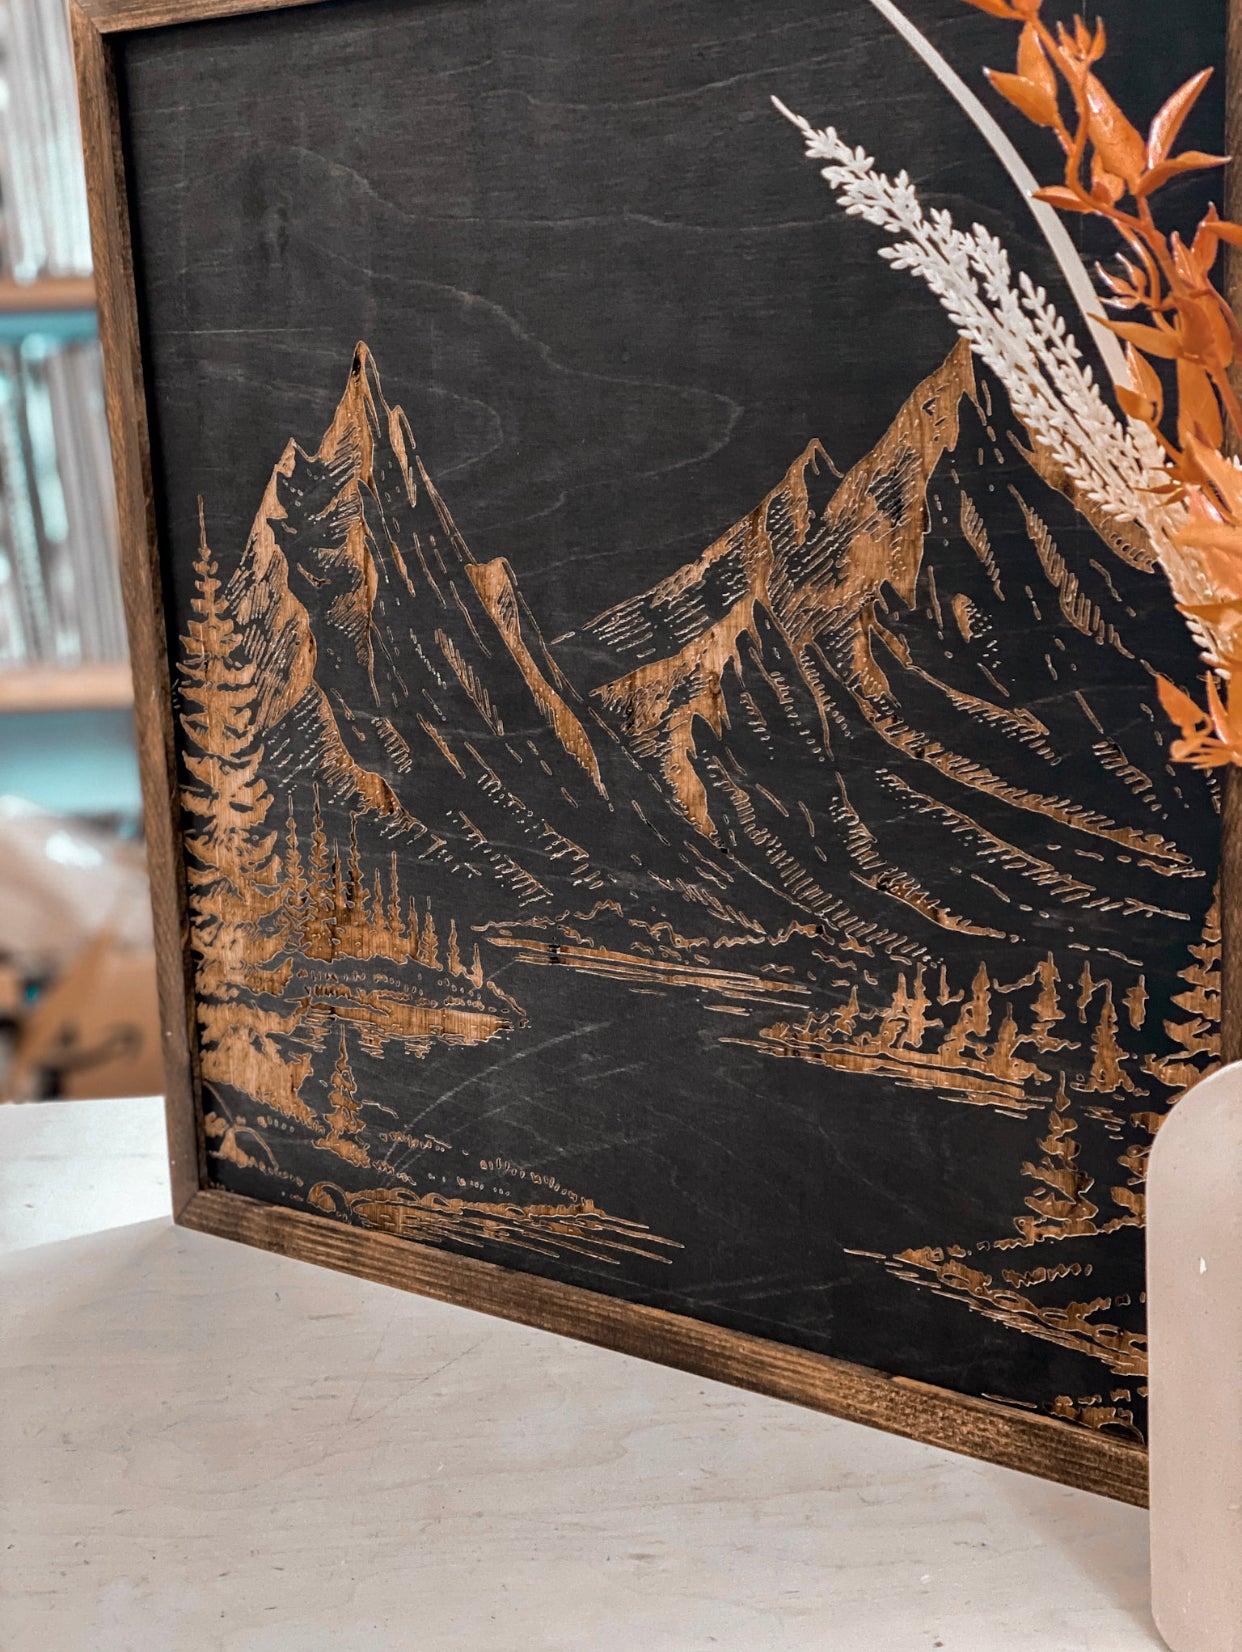 Mountain Landscape Hand Sketched Engraved Wooden Artwork